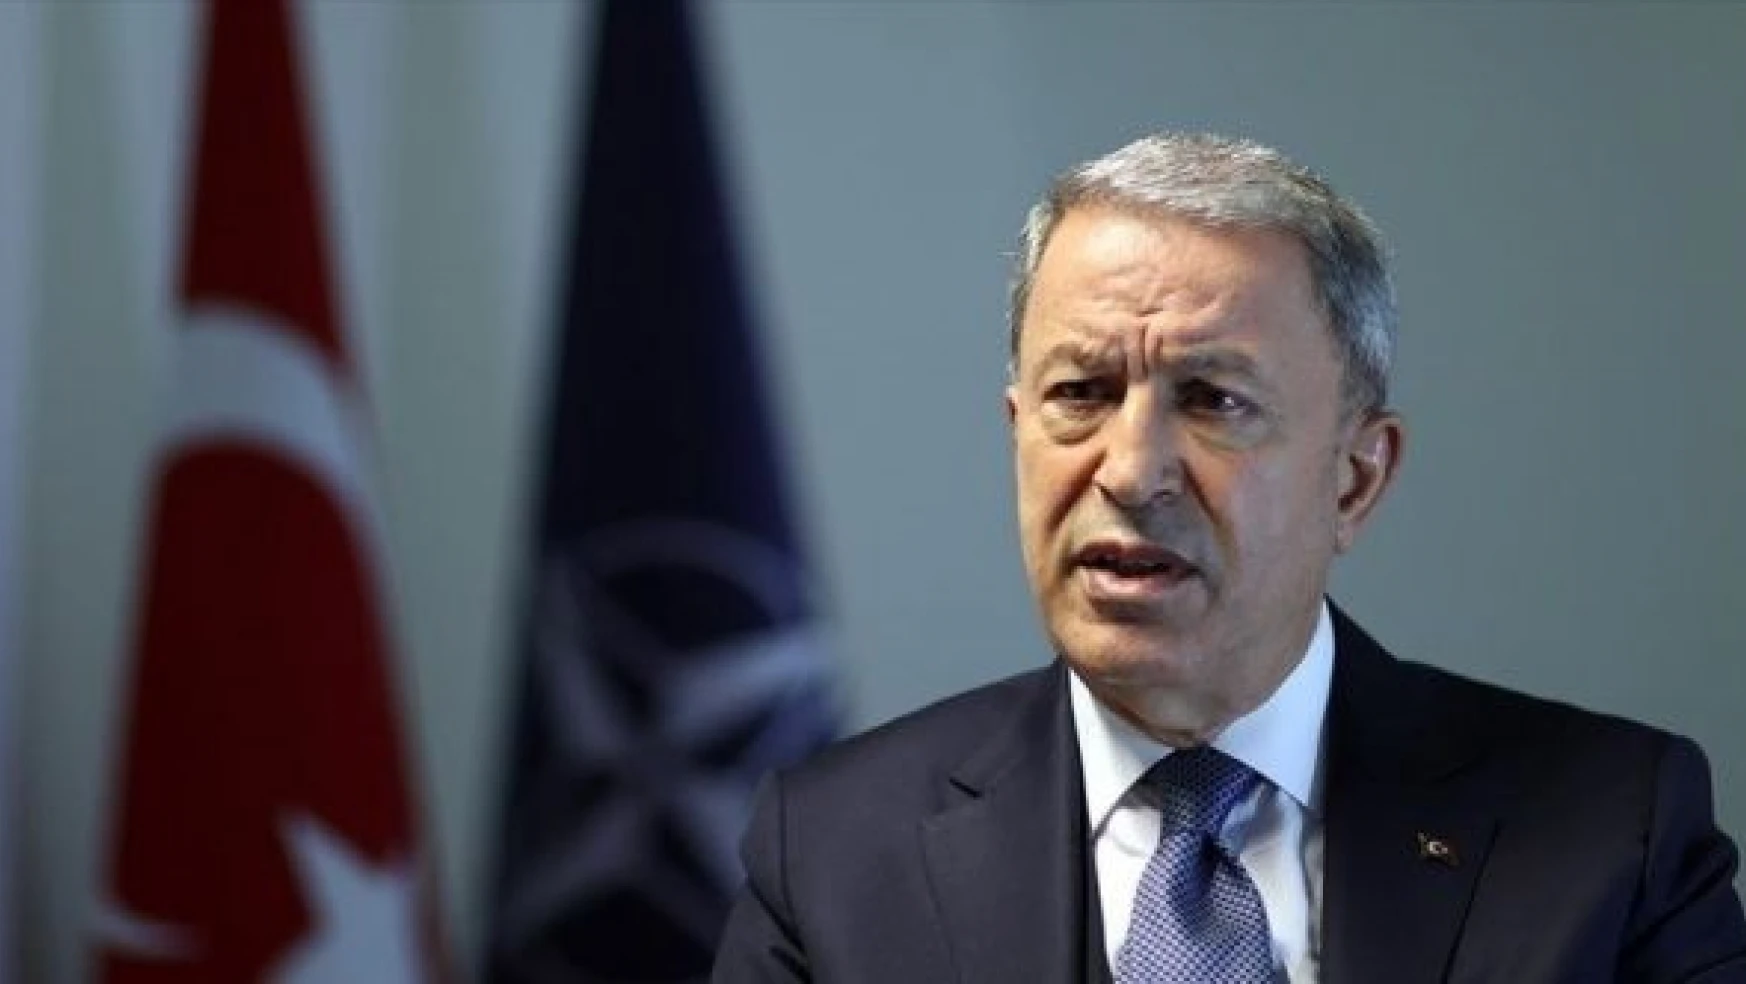 Milli Savunma Bakanı Akar: "Şu ana kadar Boğaz'dan herhangi bir savaş gemisi geçişi olmadı"